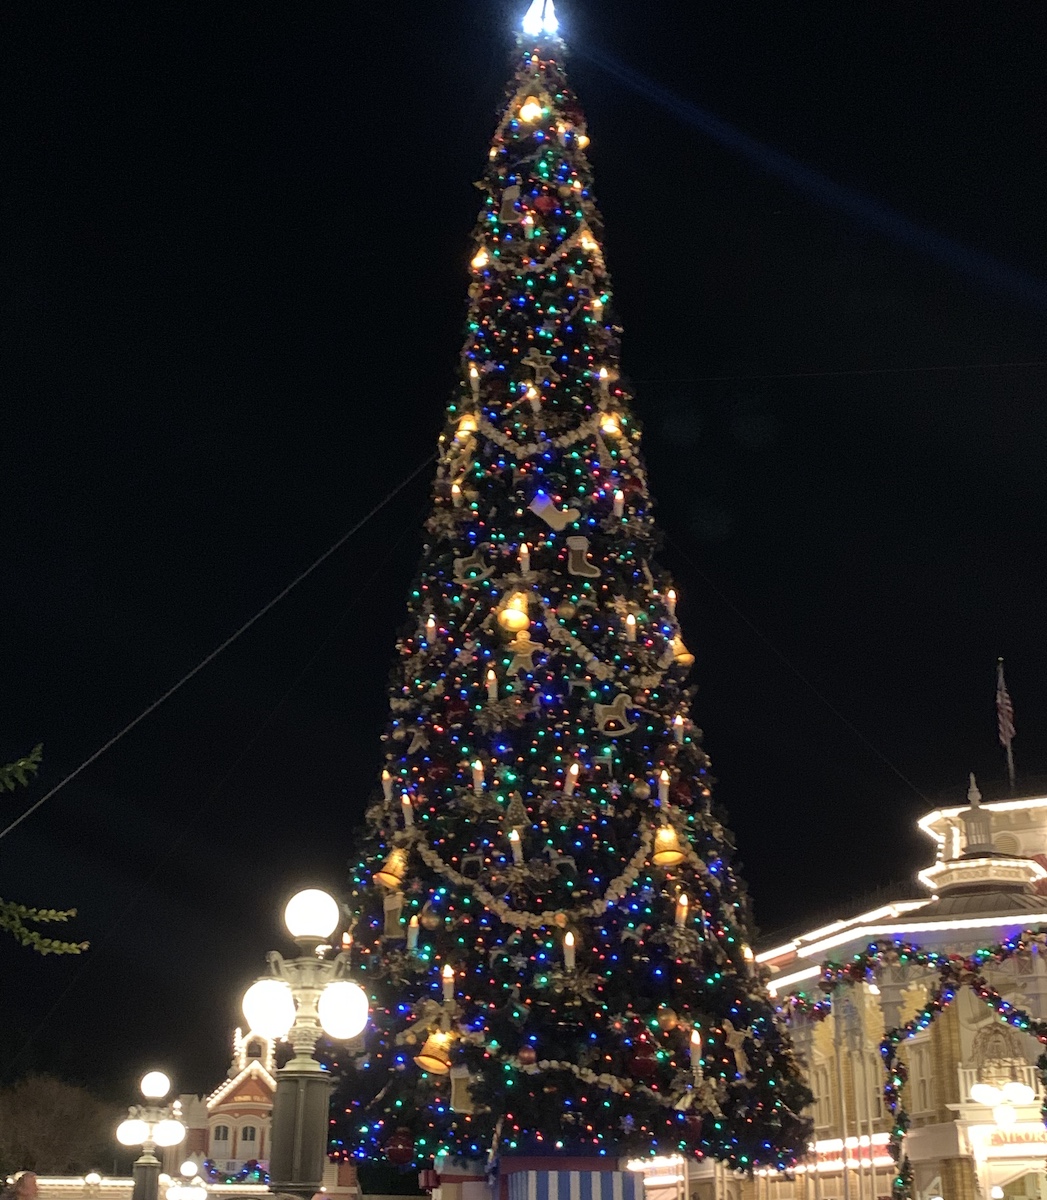 13 decoraciones navideñas que deben ver en Disney World esta temporada - 133